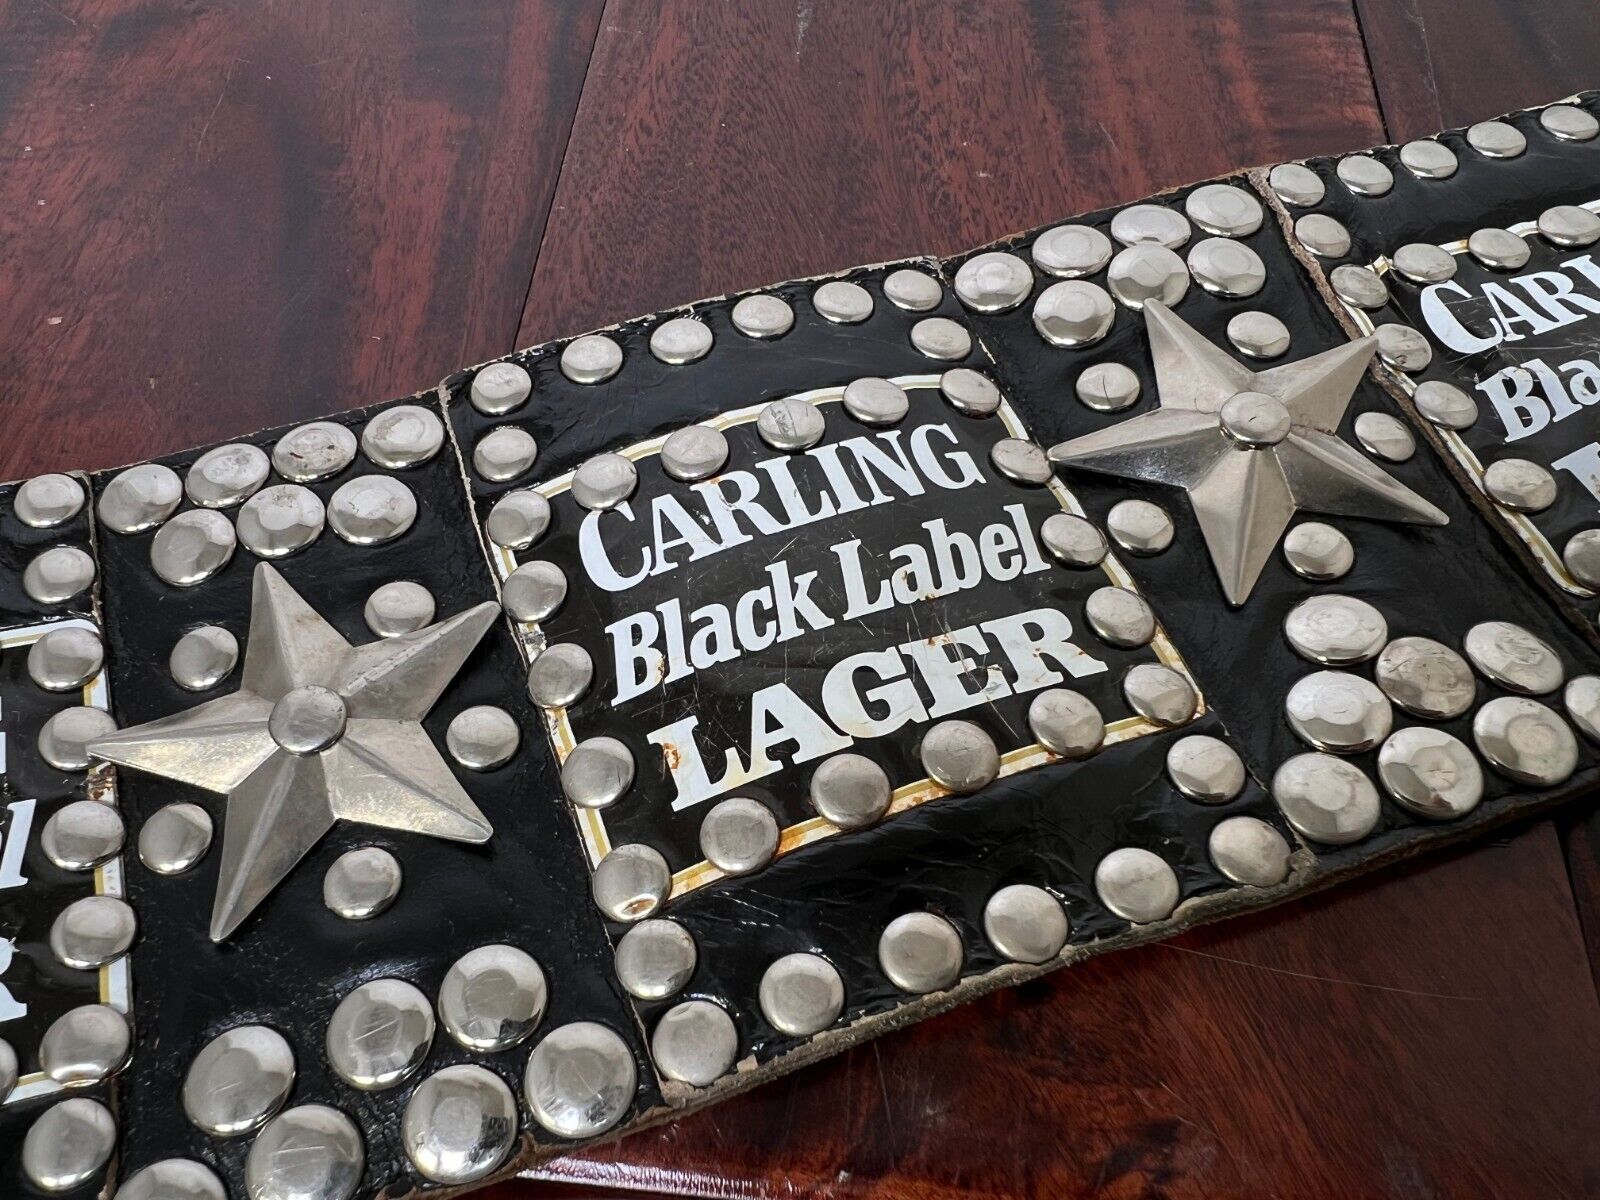 Vintage Red Balls On Fire Carling Black Label Lager Leather Belt Torn Loop